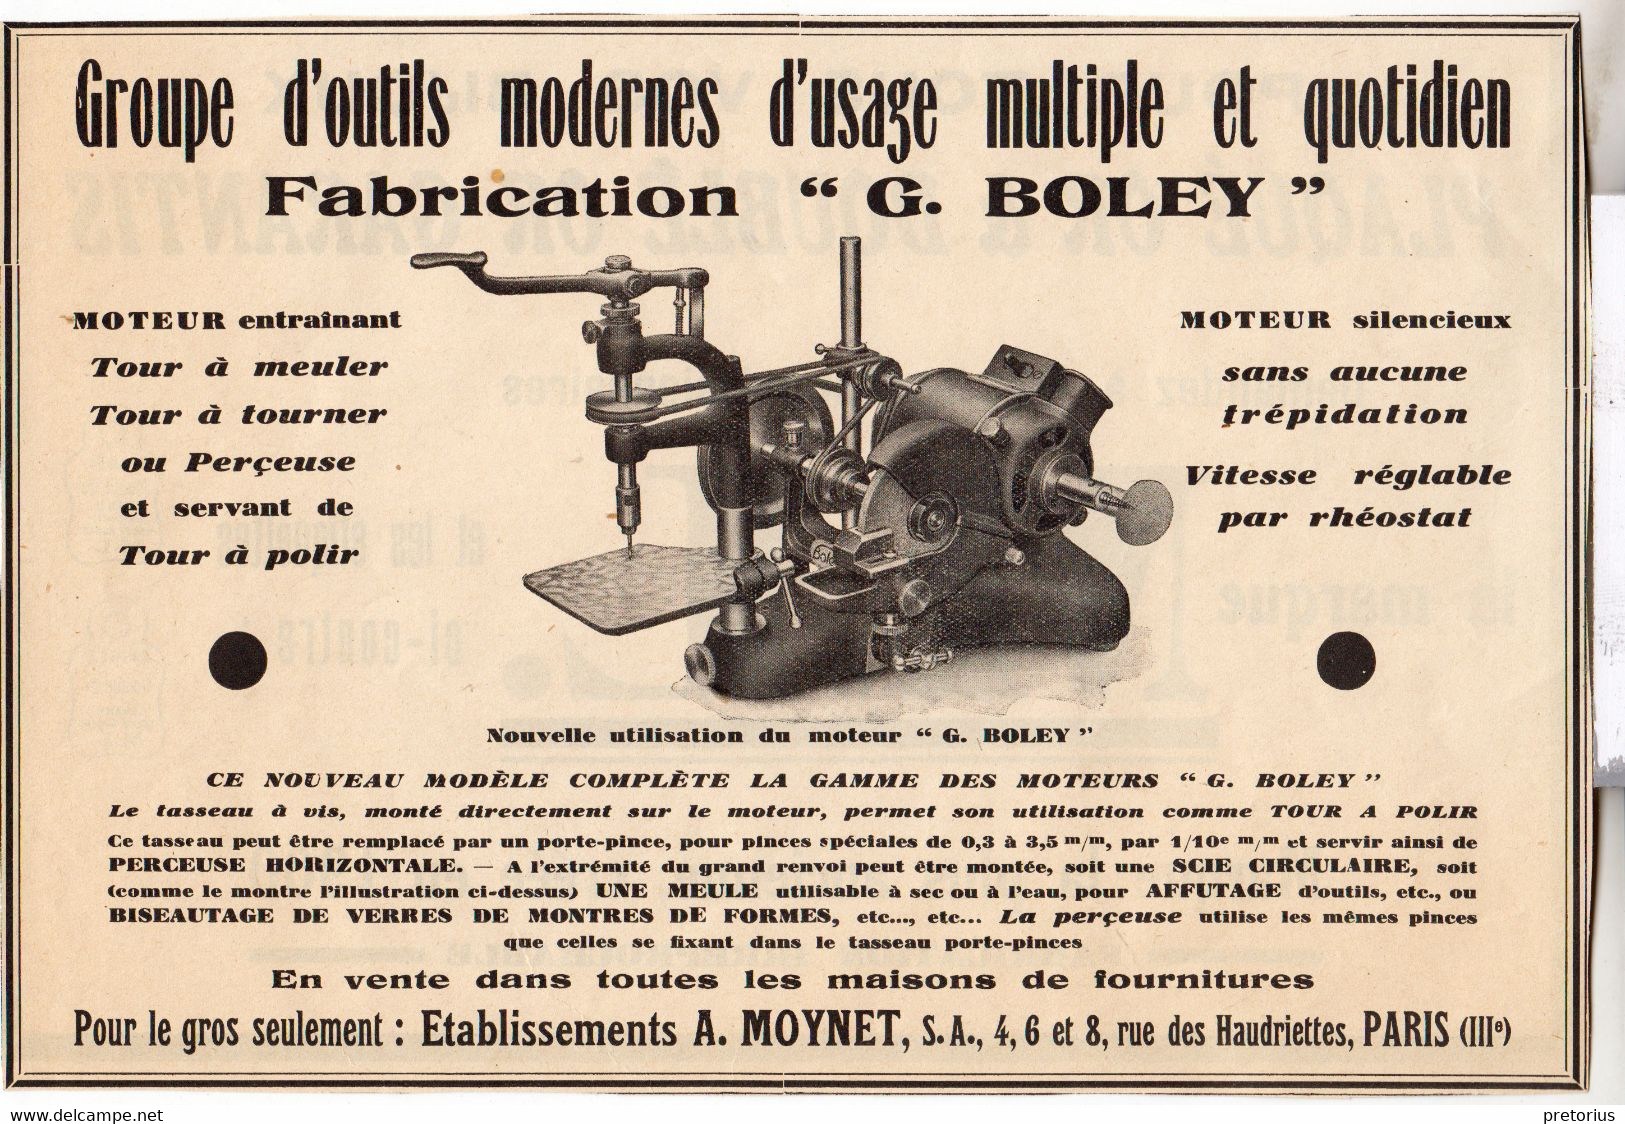 RARE PUB SUR PAPIER - 1927 - OUTILS MODERNES USAGE MULTIPLE ET QUOTIDIEN - G. BOLEY - ETABL. A. MOYNET -  PARIS - Supplies And Equipment